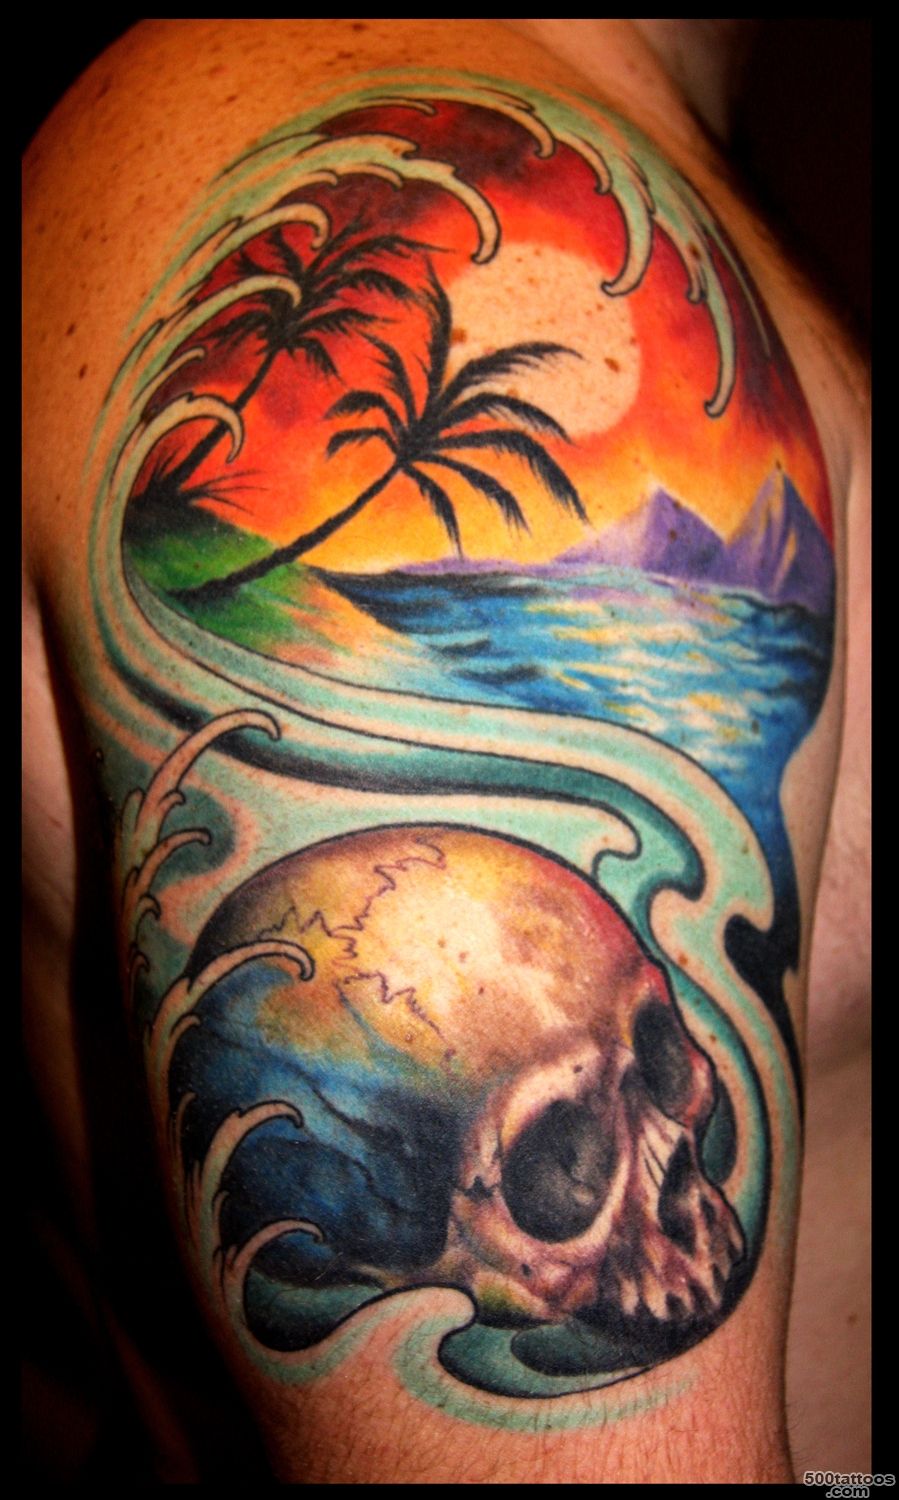 Sunset Lighthouse Tattoo On Full Back   Tattoes Idea 2015  2016_12